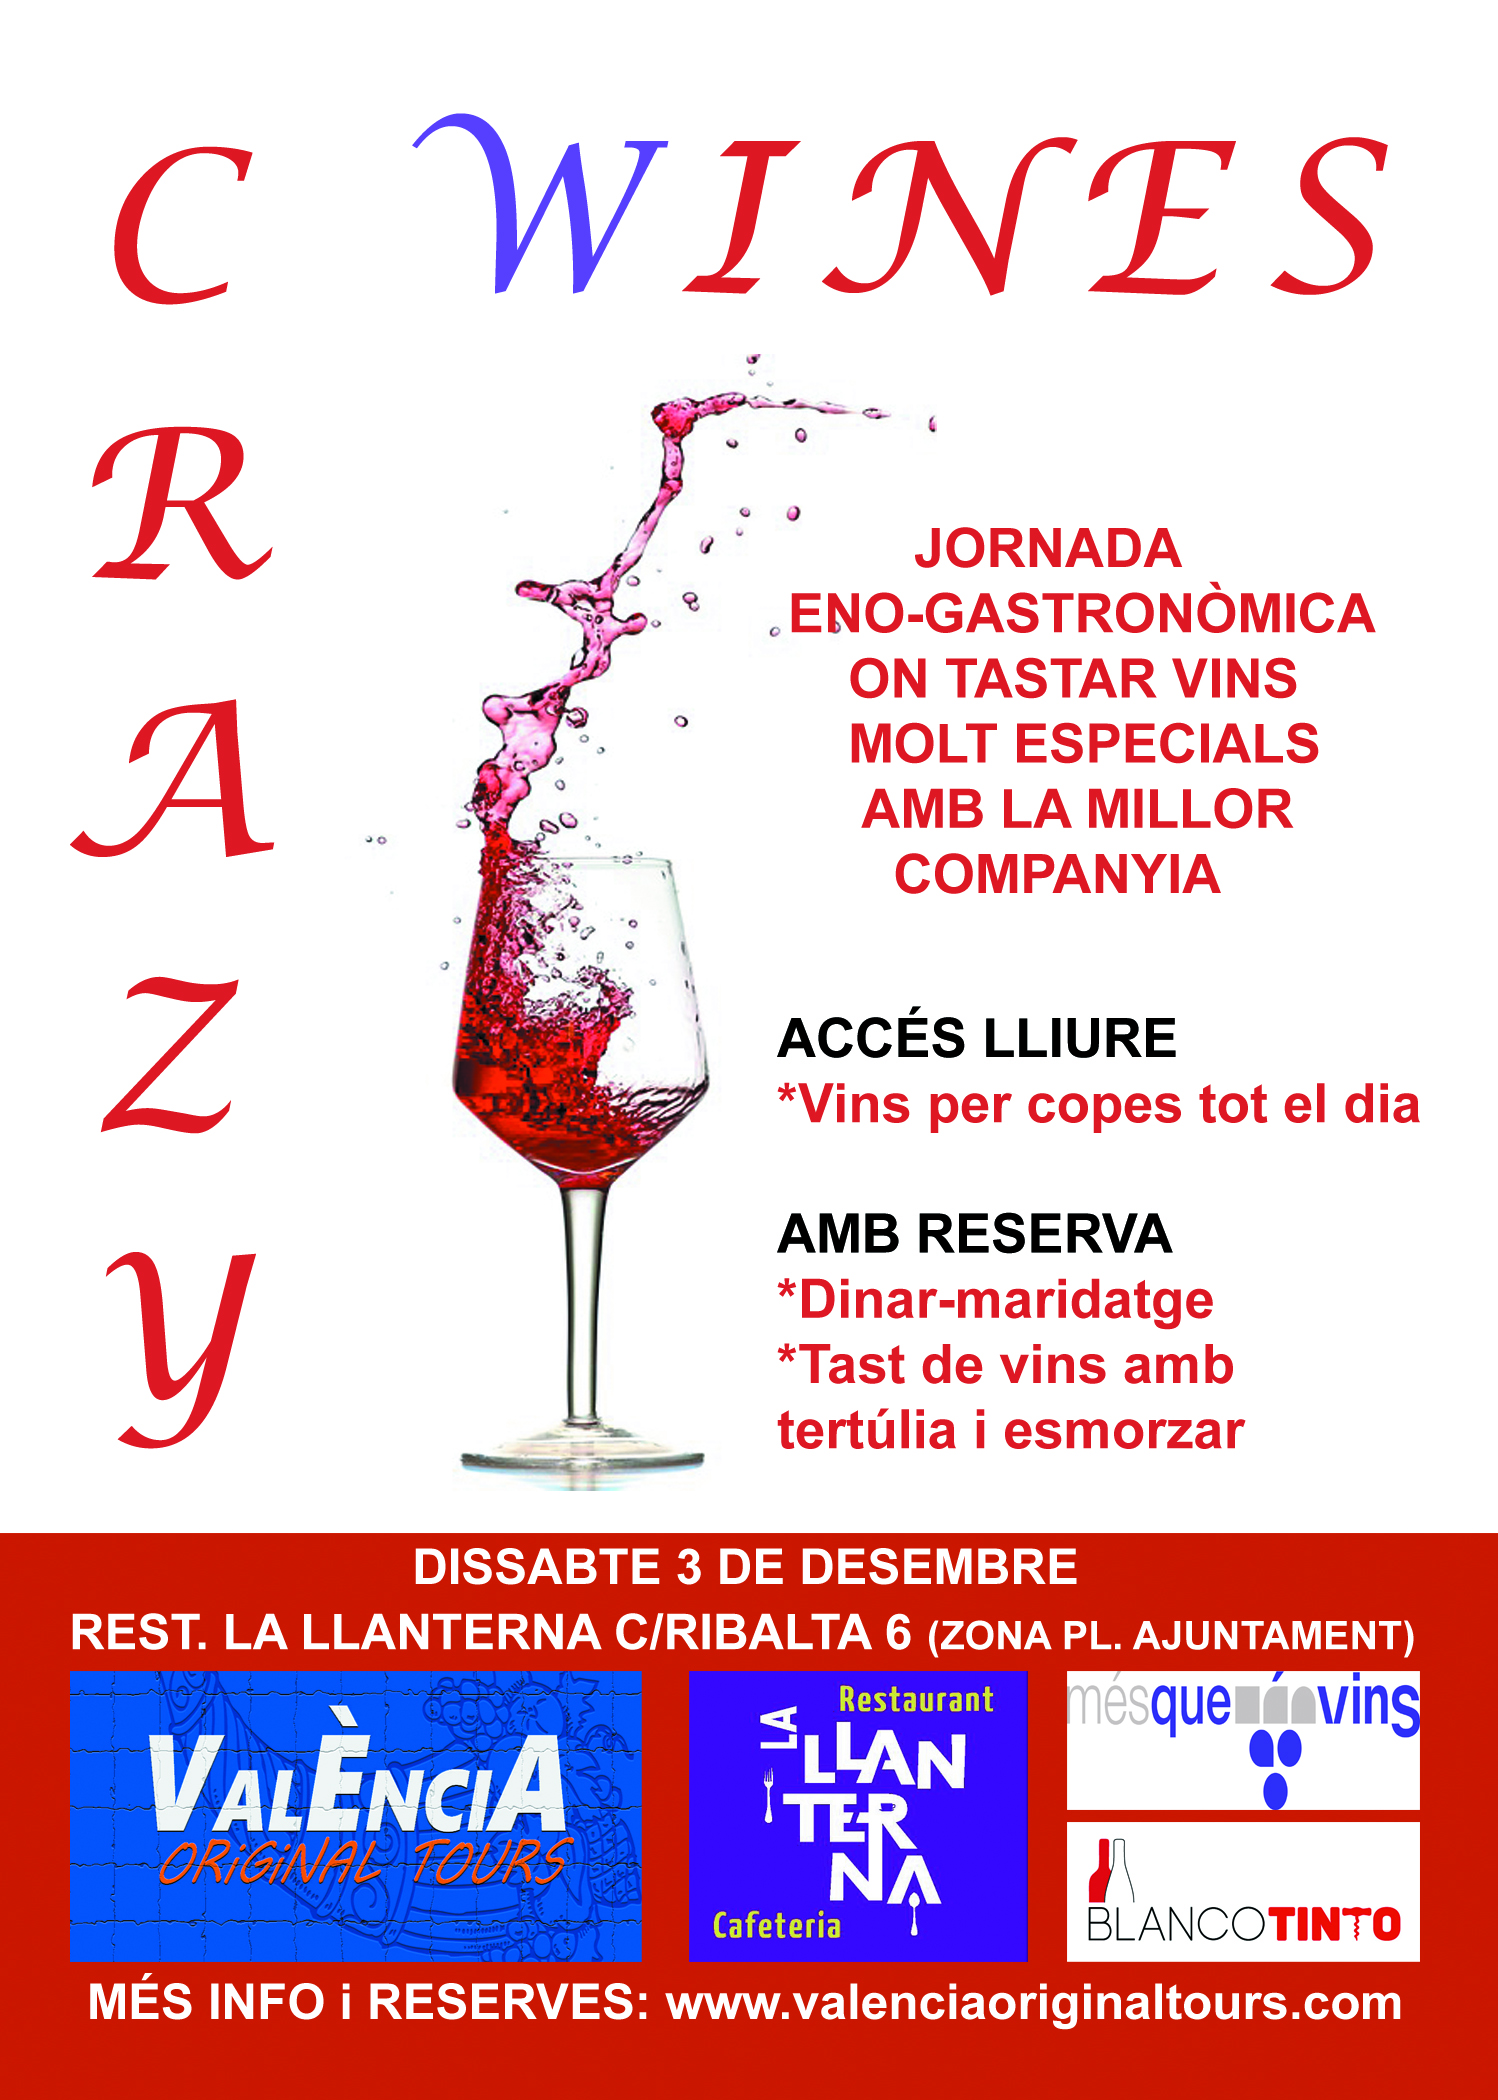 crazy-wines